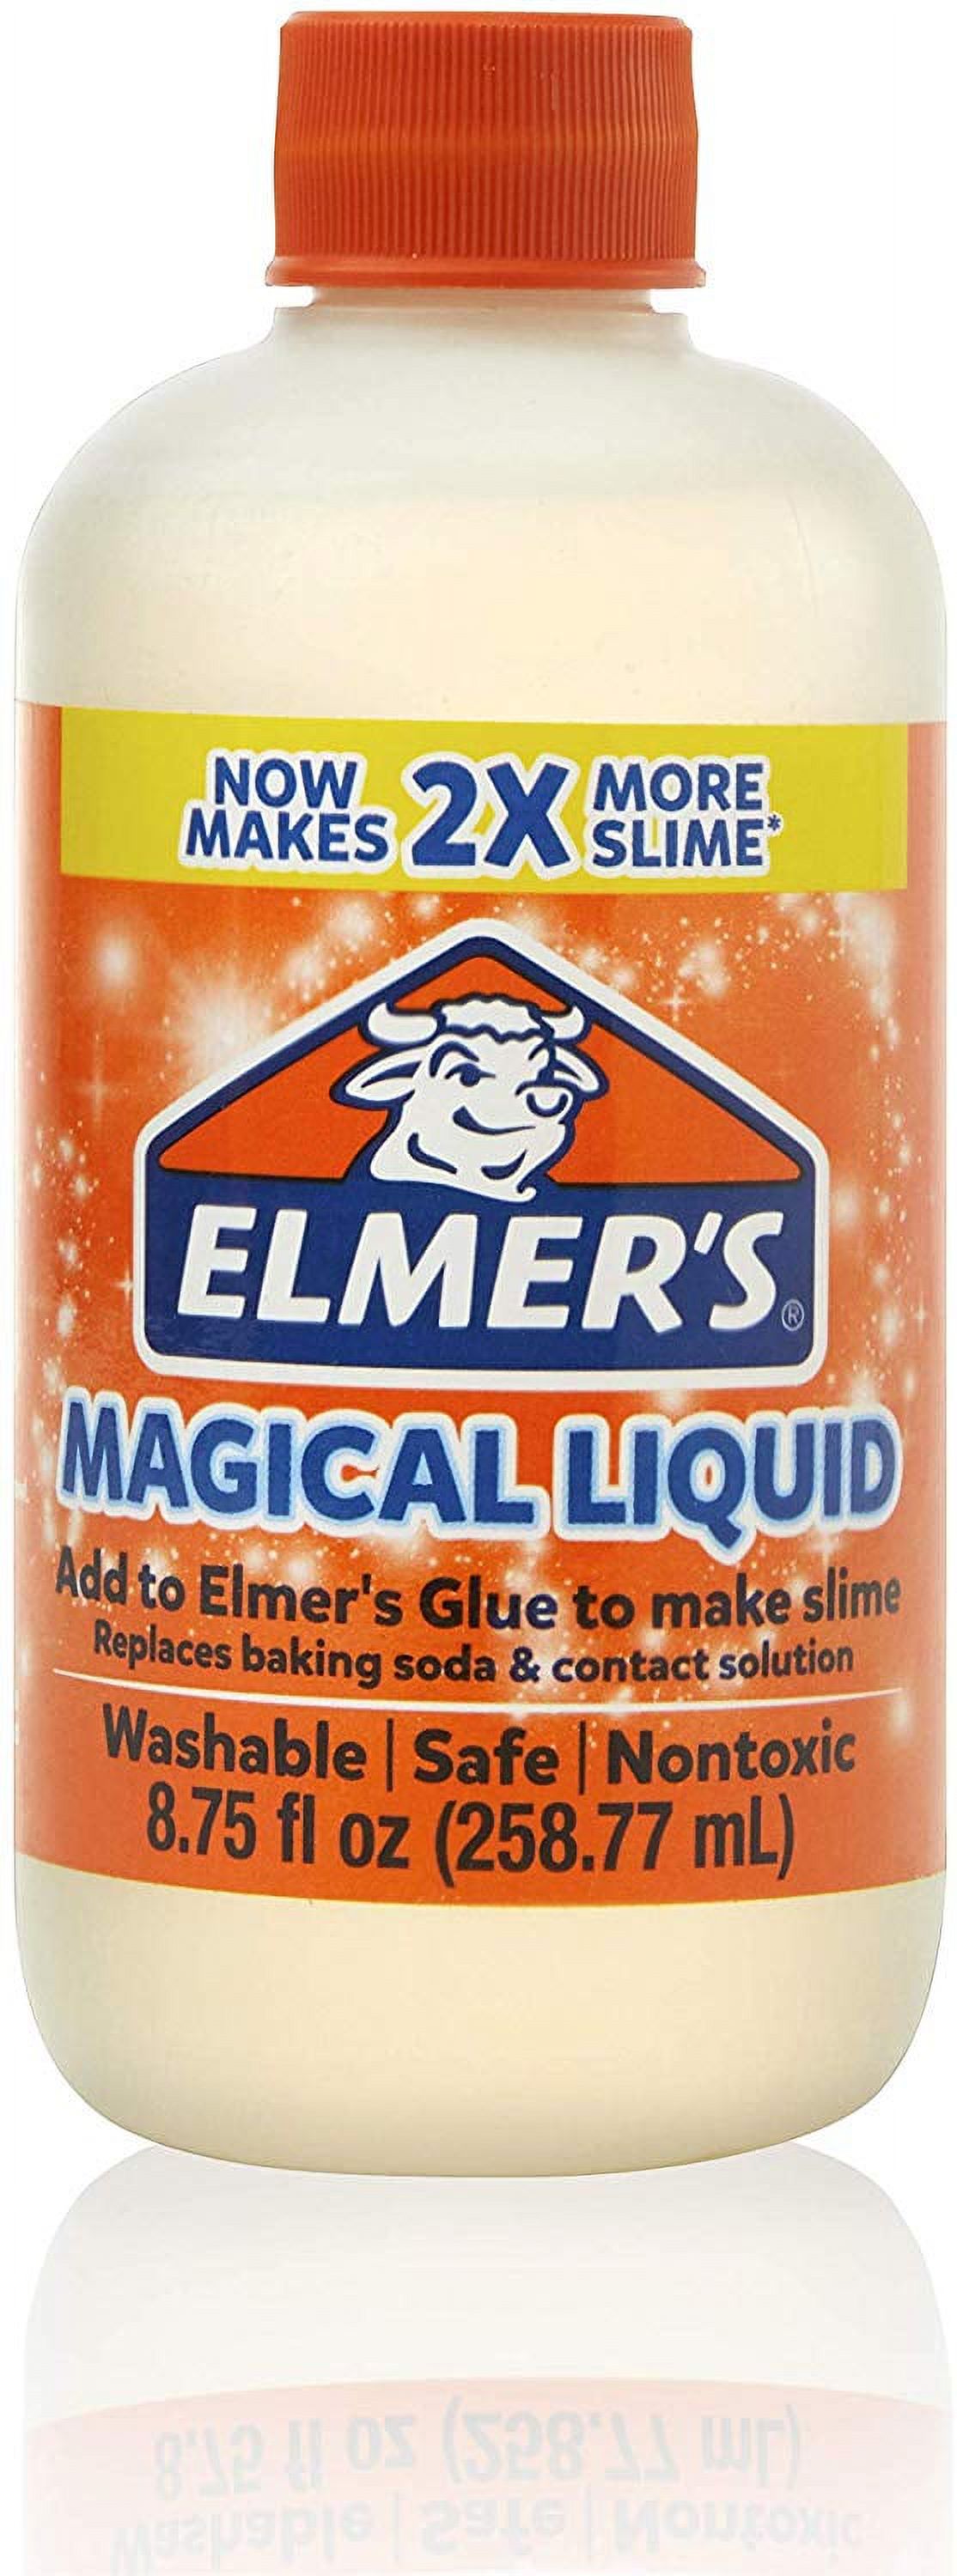 DIY Slime Supplies & Ingredients in How To Make Slime 